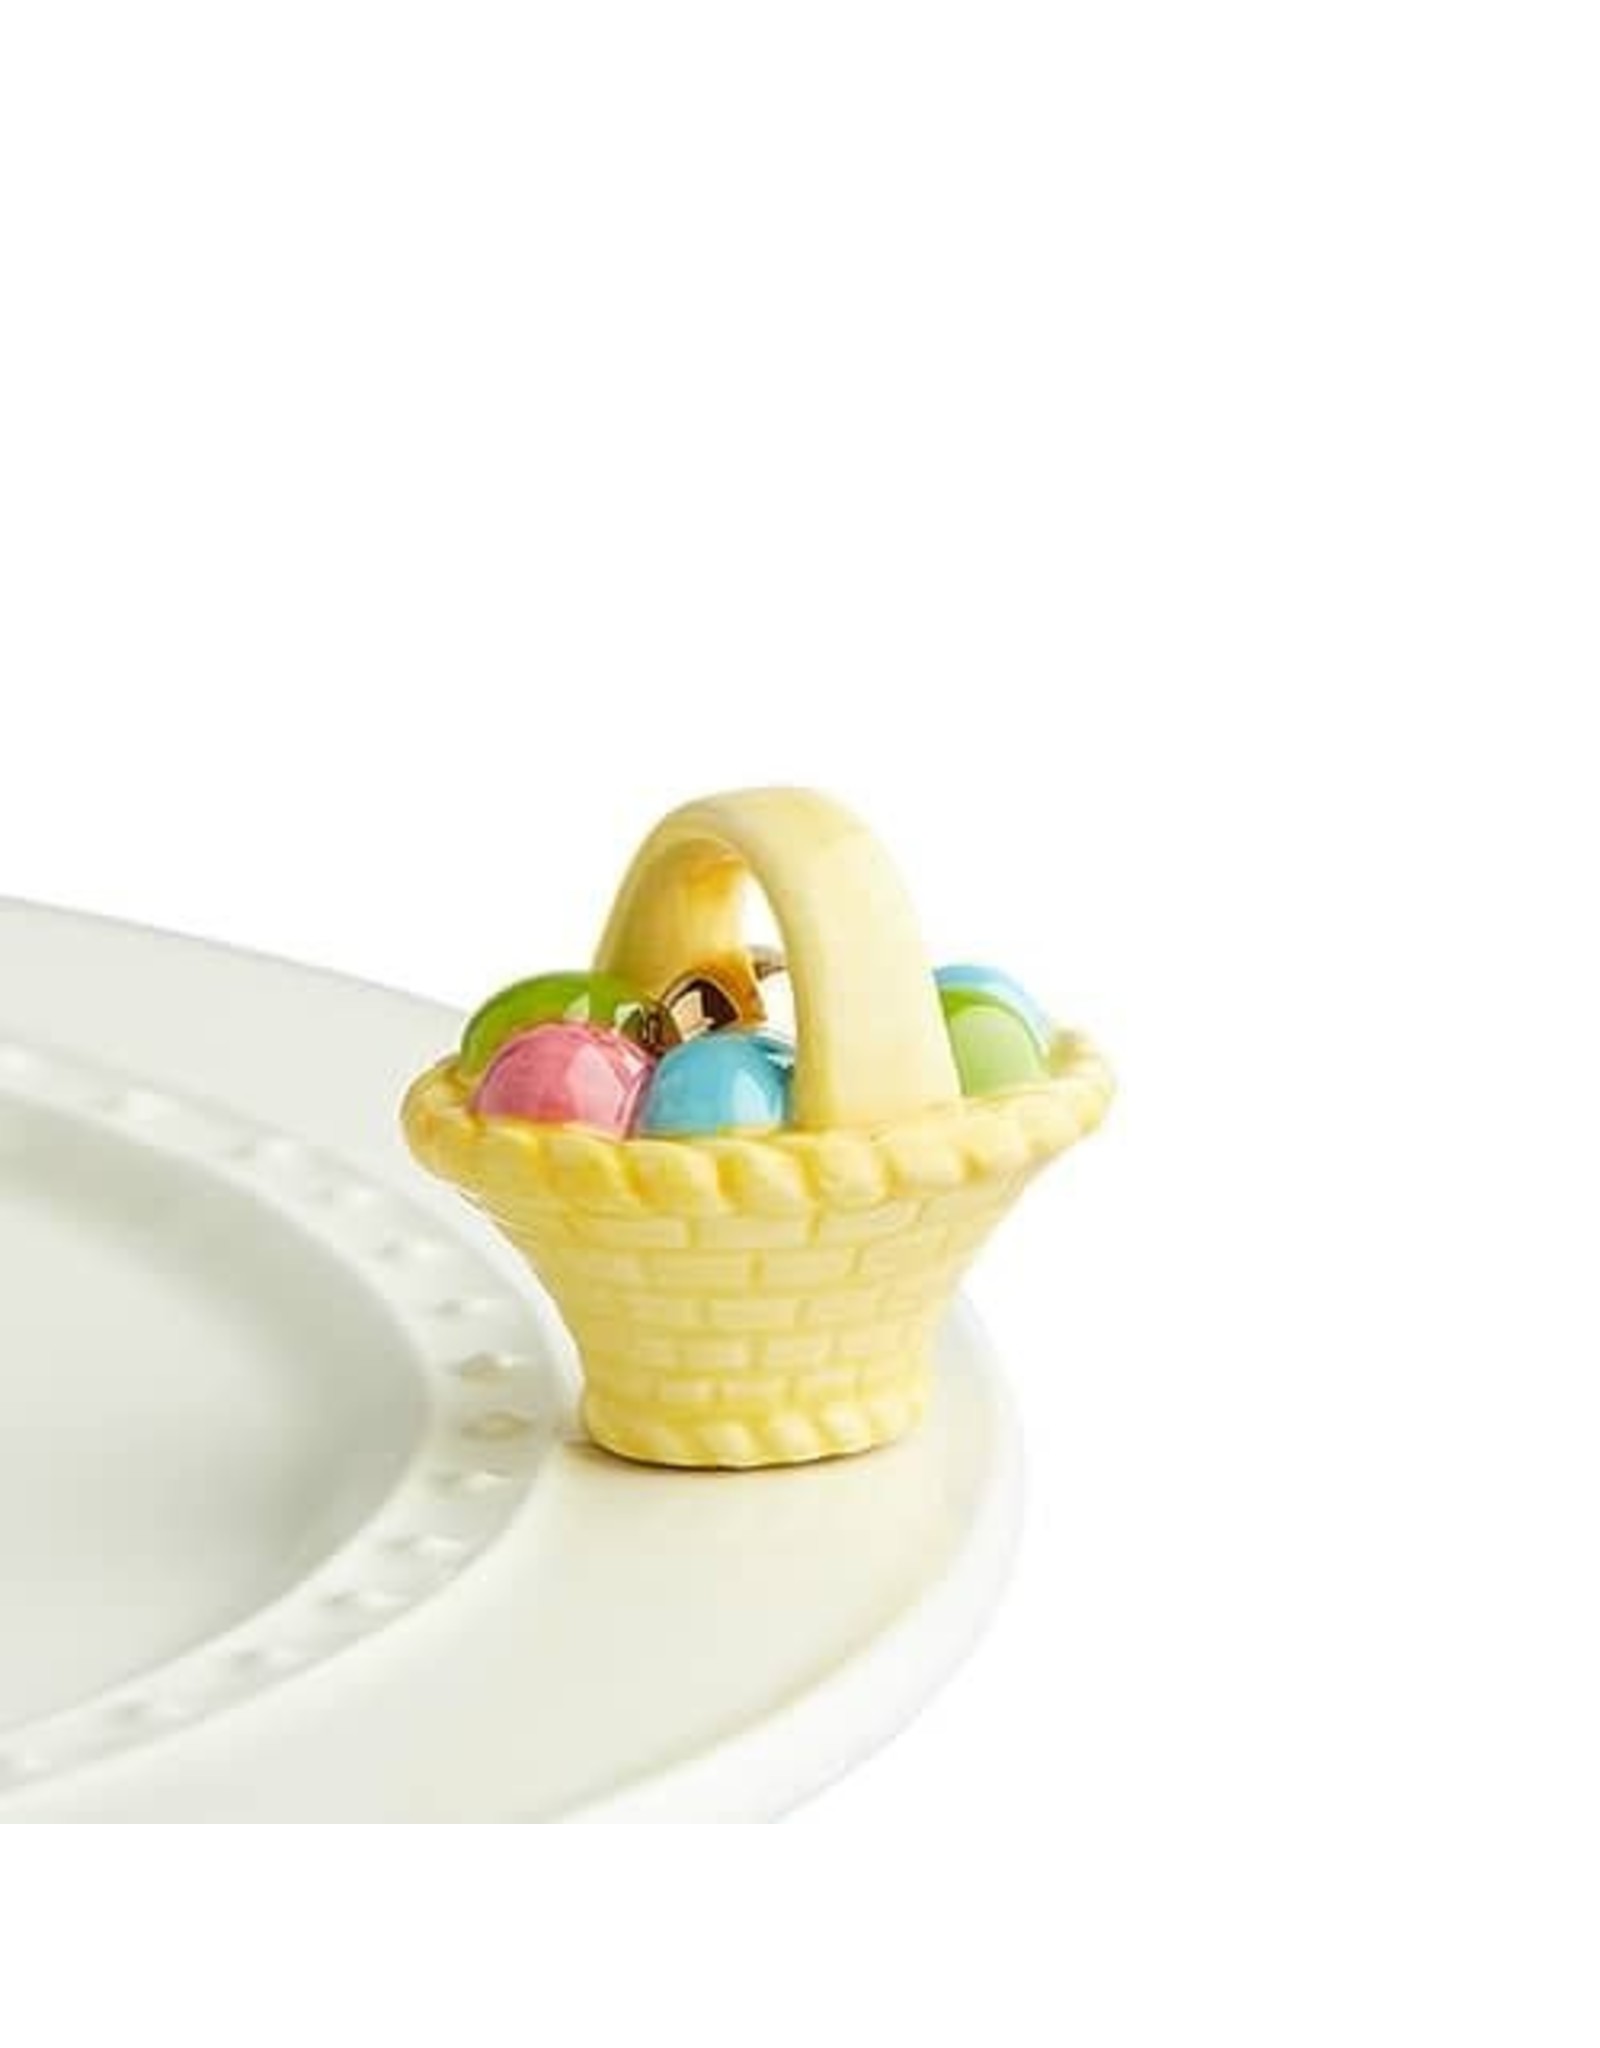 A tisket, a tasket basket with eggs